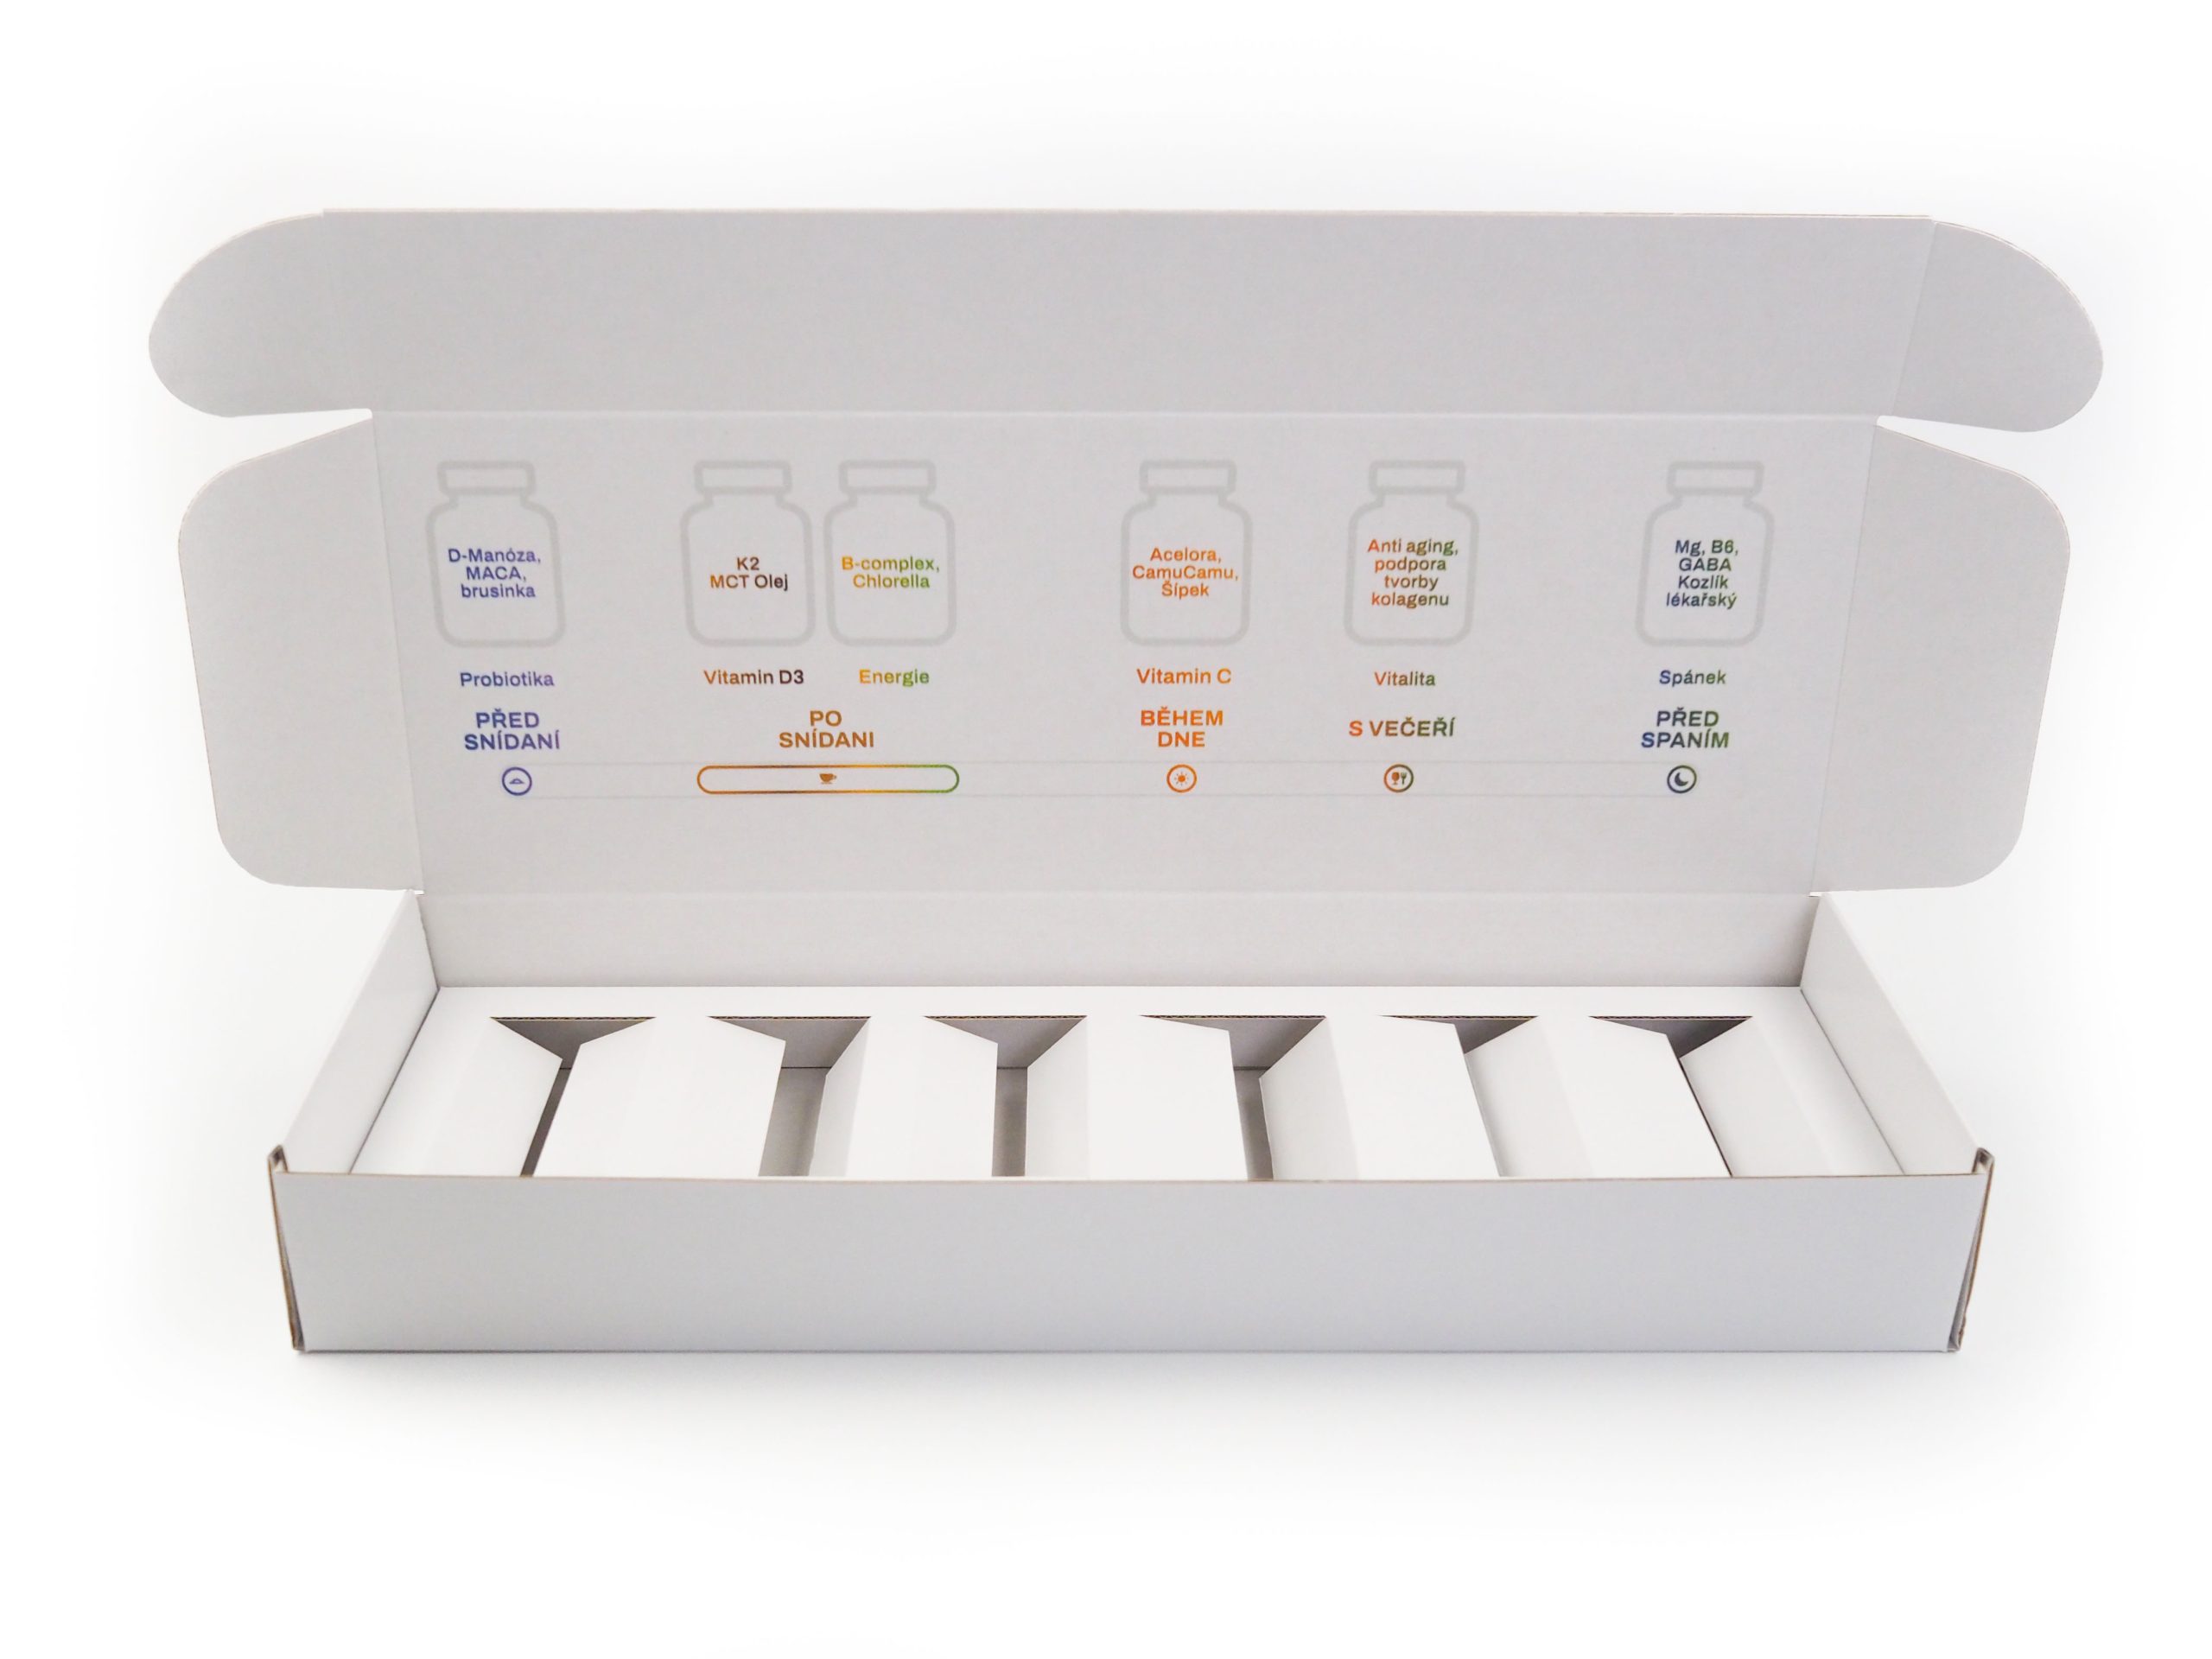 Klopová krabice na vitamíny byla vyrobena s proložkou, do které se vkládá balení s pilulkami.  Krabičky byly vyrobeny z bílo/bílé lepenky a potištěny digitálním tiskem dle dat dodaných zákazníkem.